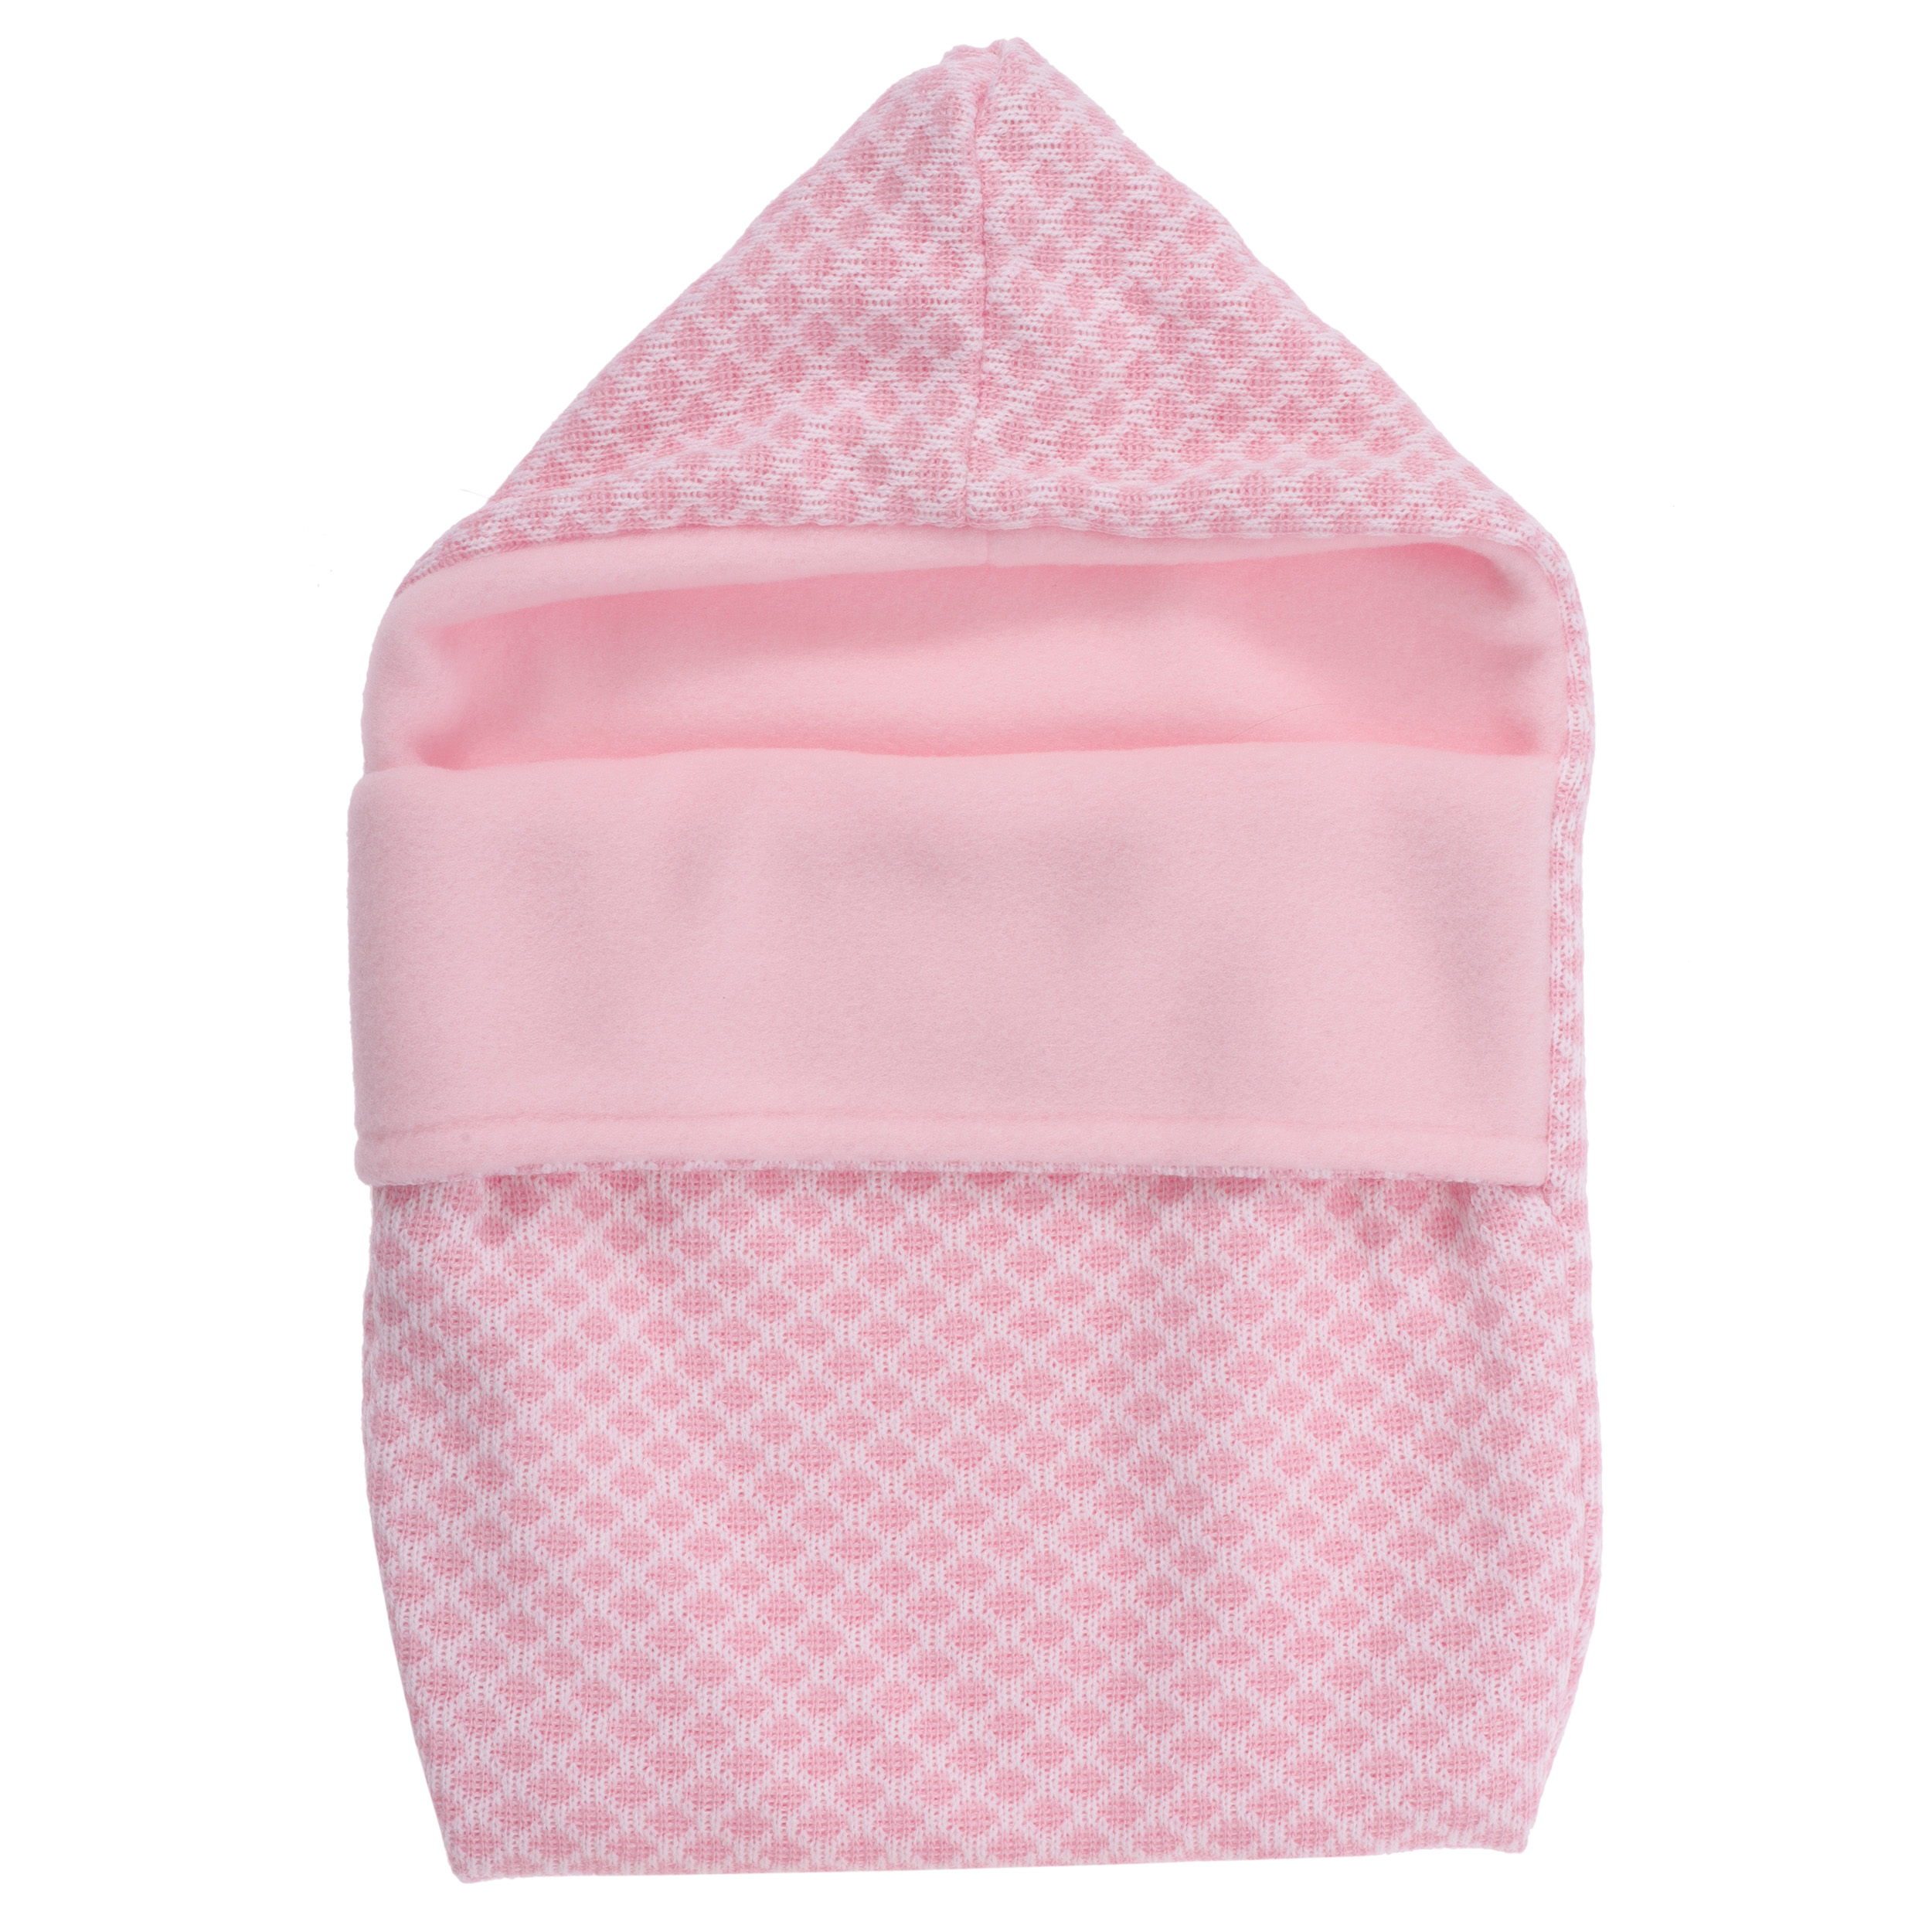 Одежда для кукол и пупсов 25-29 см конверт розовый боди-комбинезон шапка  